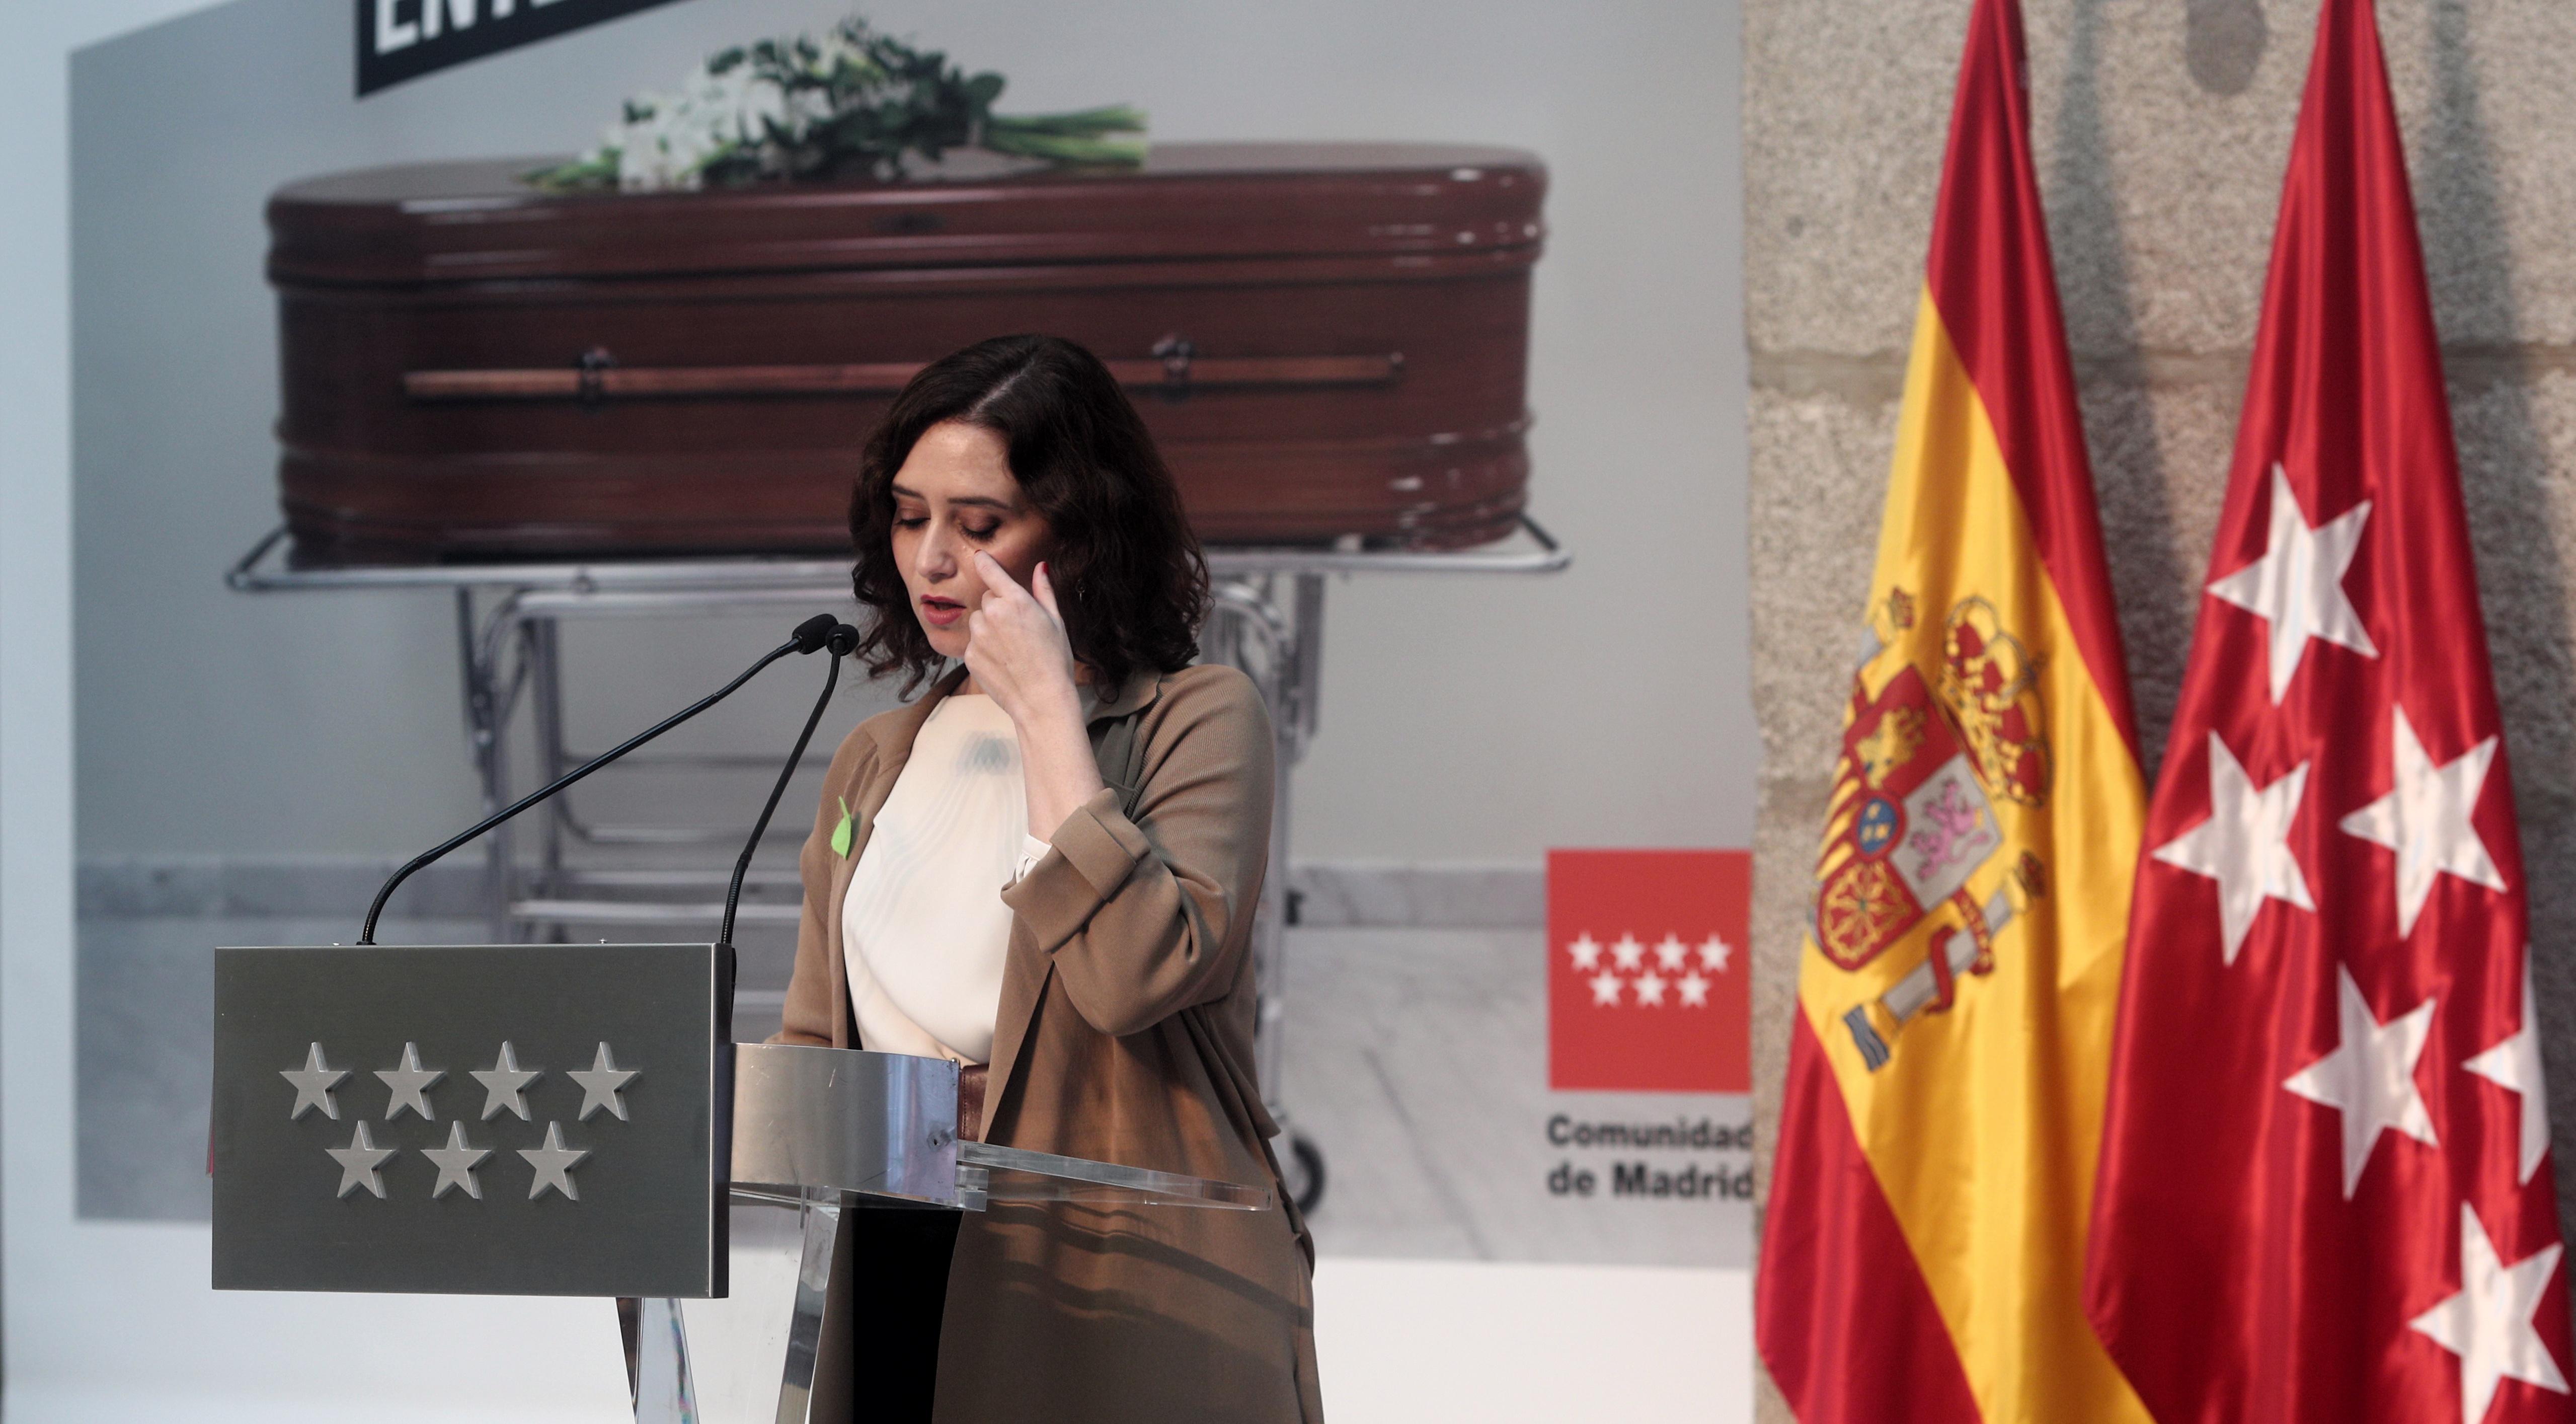 La presidenta de la Comunidad de Madrid, Isabel Díaz Ayuso, durante la presentación de la campaña informativa para concienciar de los riesgos del COVID-19. EP